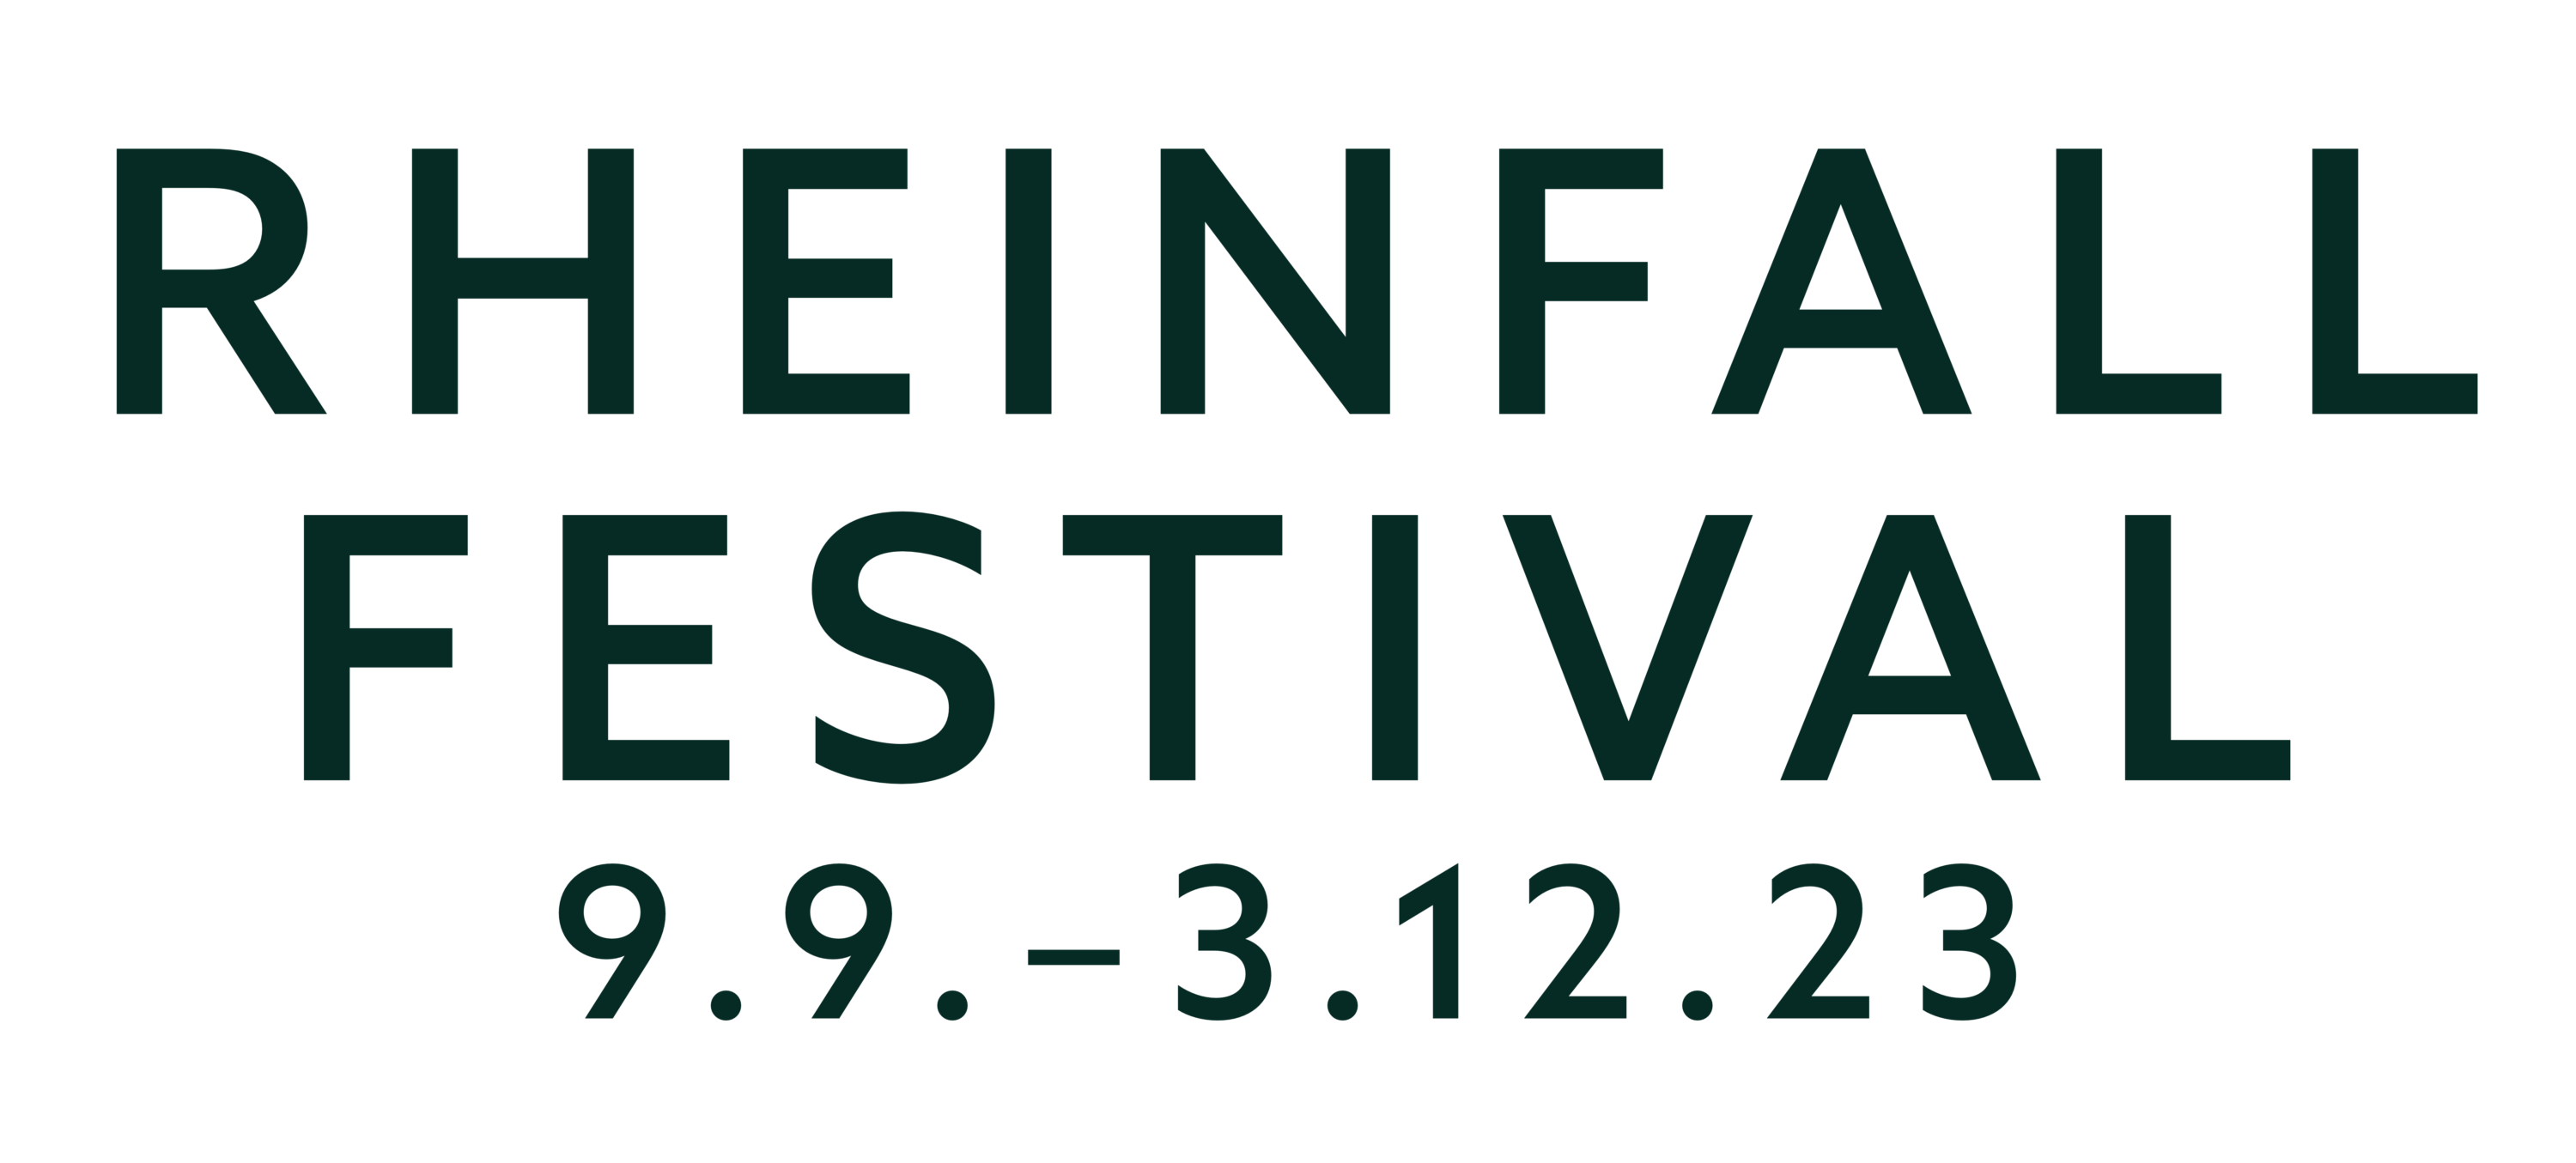 Rheinfall Festival